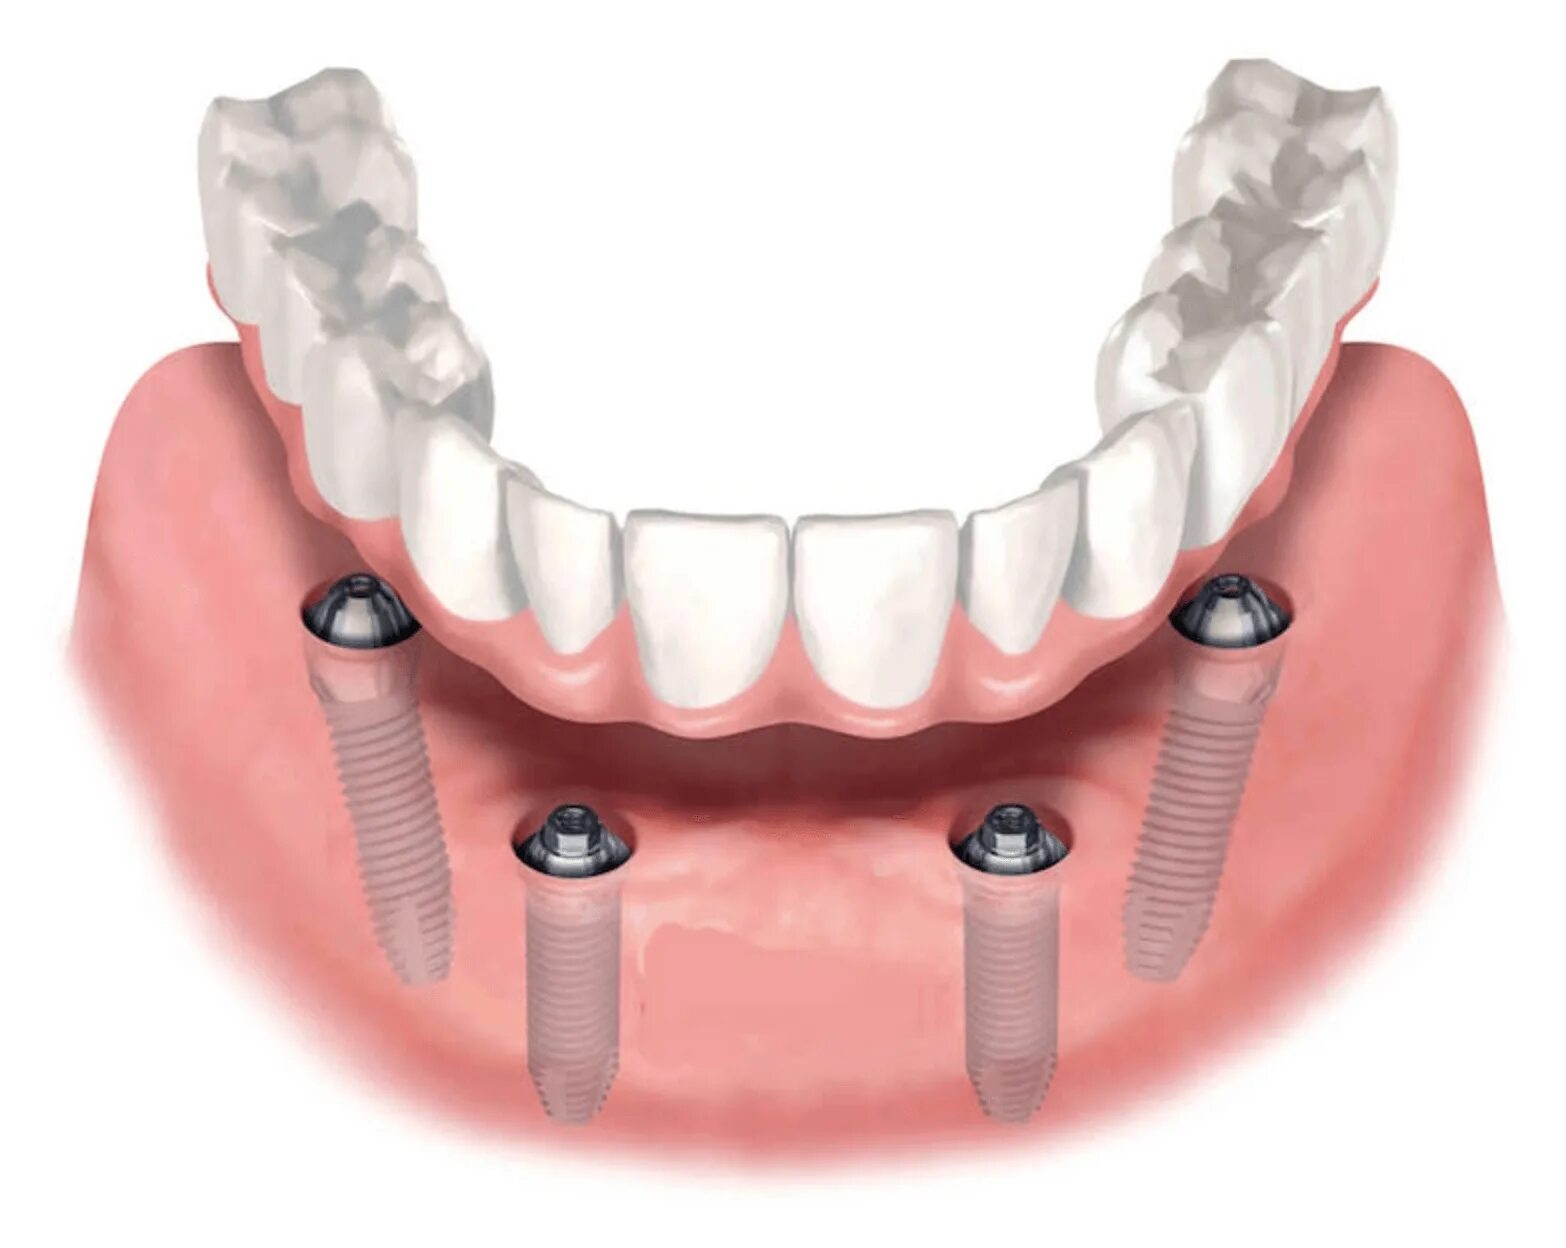 Имплантологическая кассета Nobel полный набор для all on 4. Имплантация Neodent. Мостовидный протез на имплантах на 4 зуба нижней челюсти.